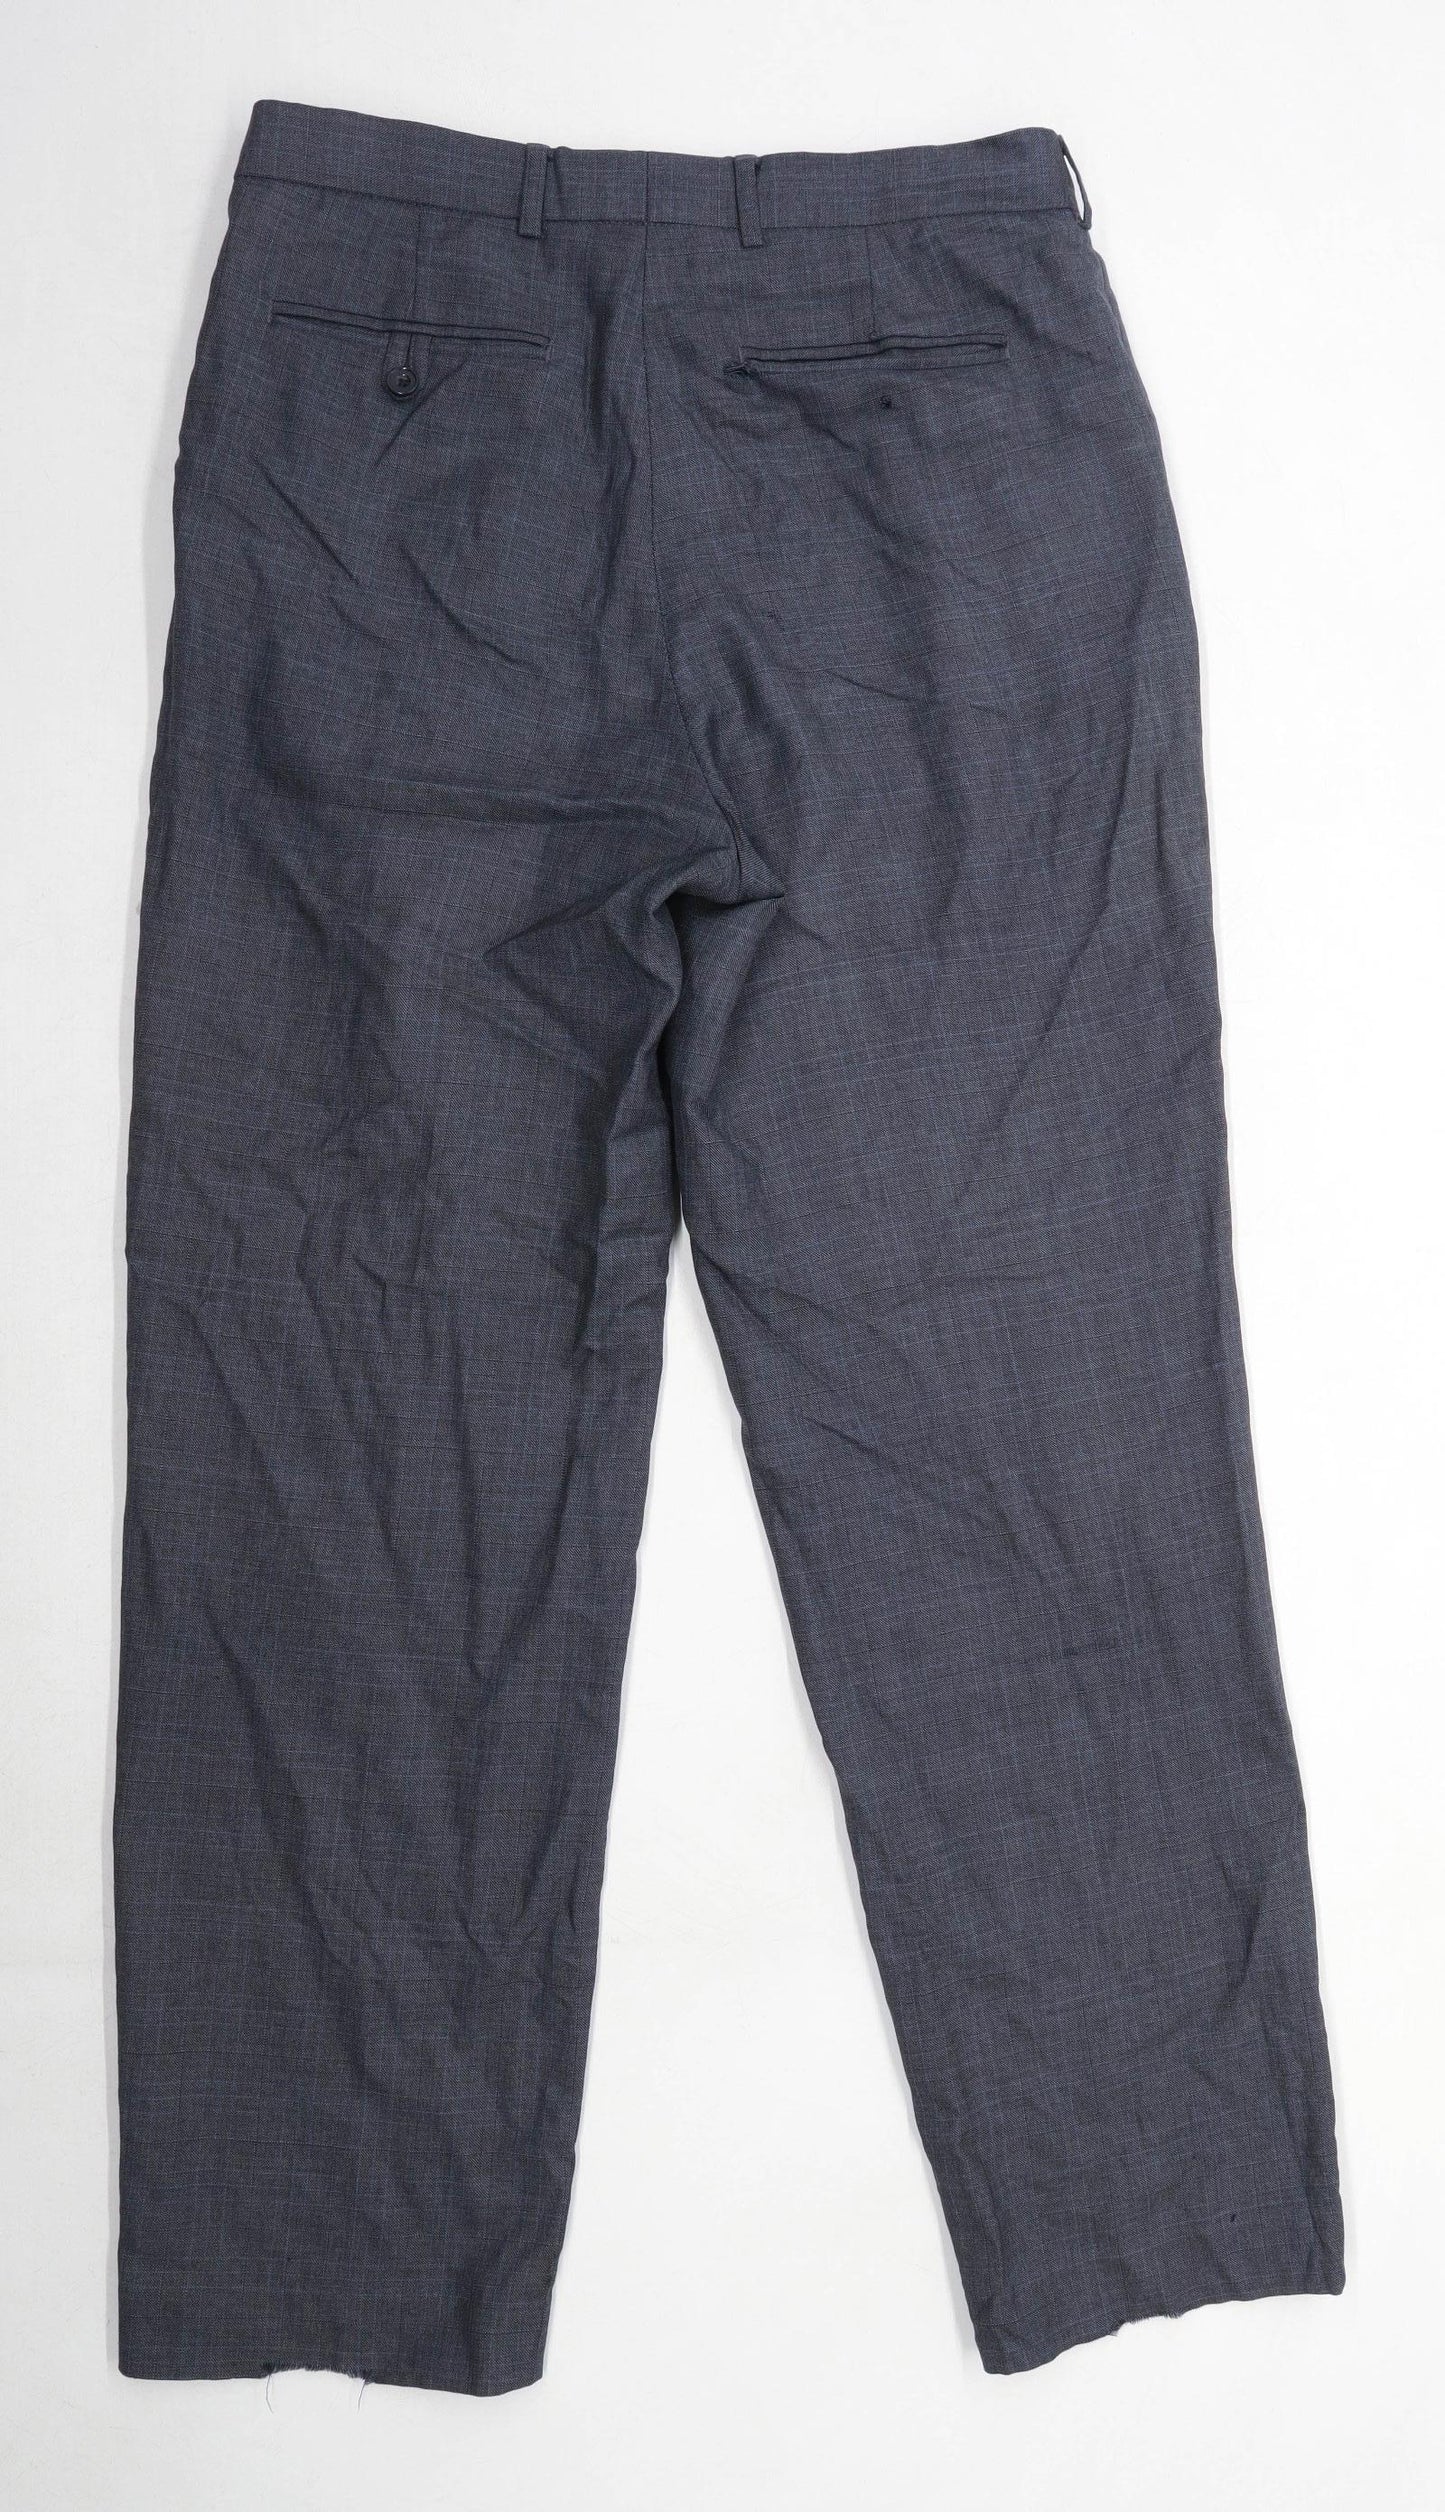 Preworn Mens Check Grey Cotton Blend Trousers Size W38/L33